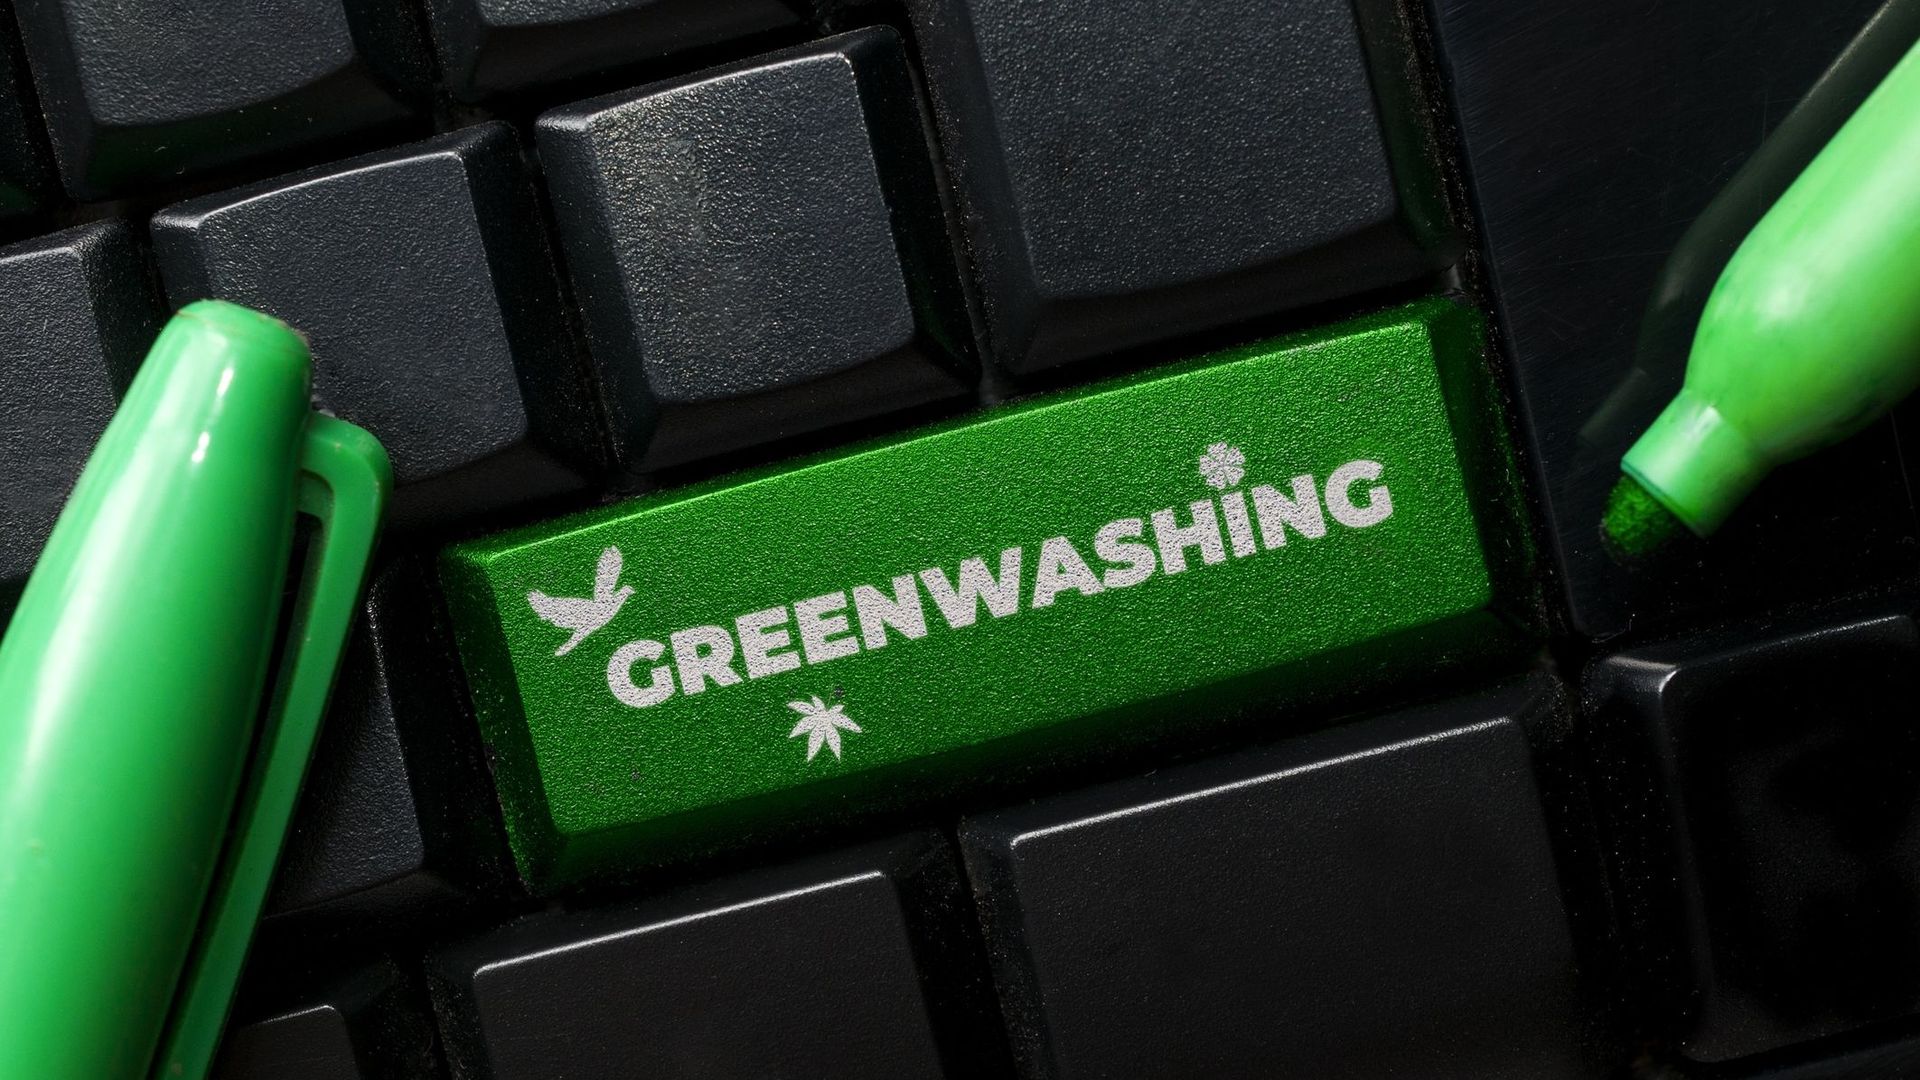 Les sites internet commerciaux sont nombreux à se rendre coupables de greenwashing.